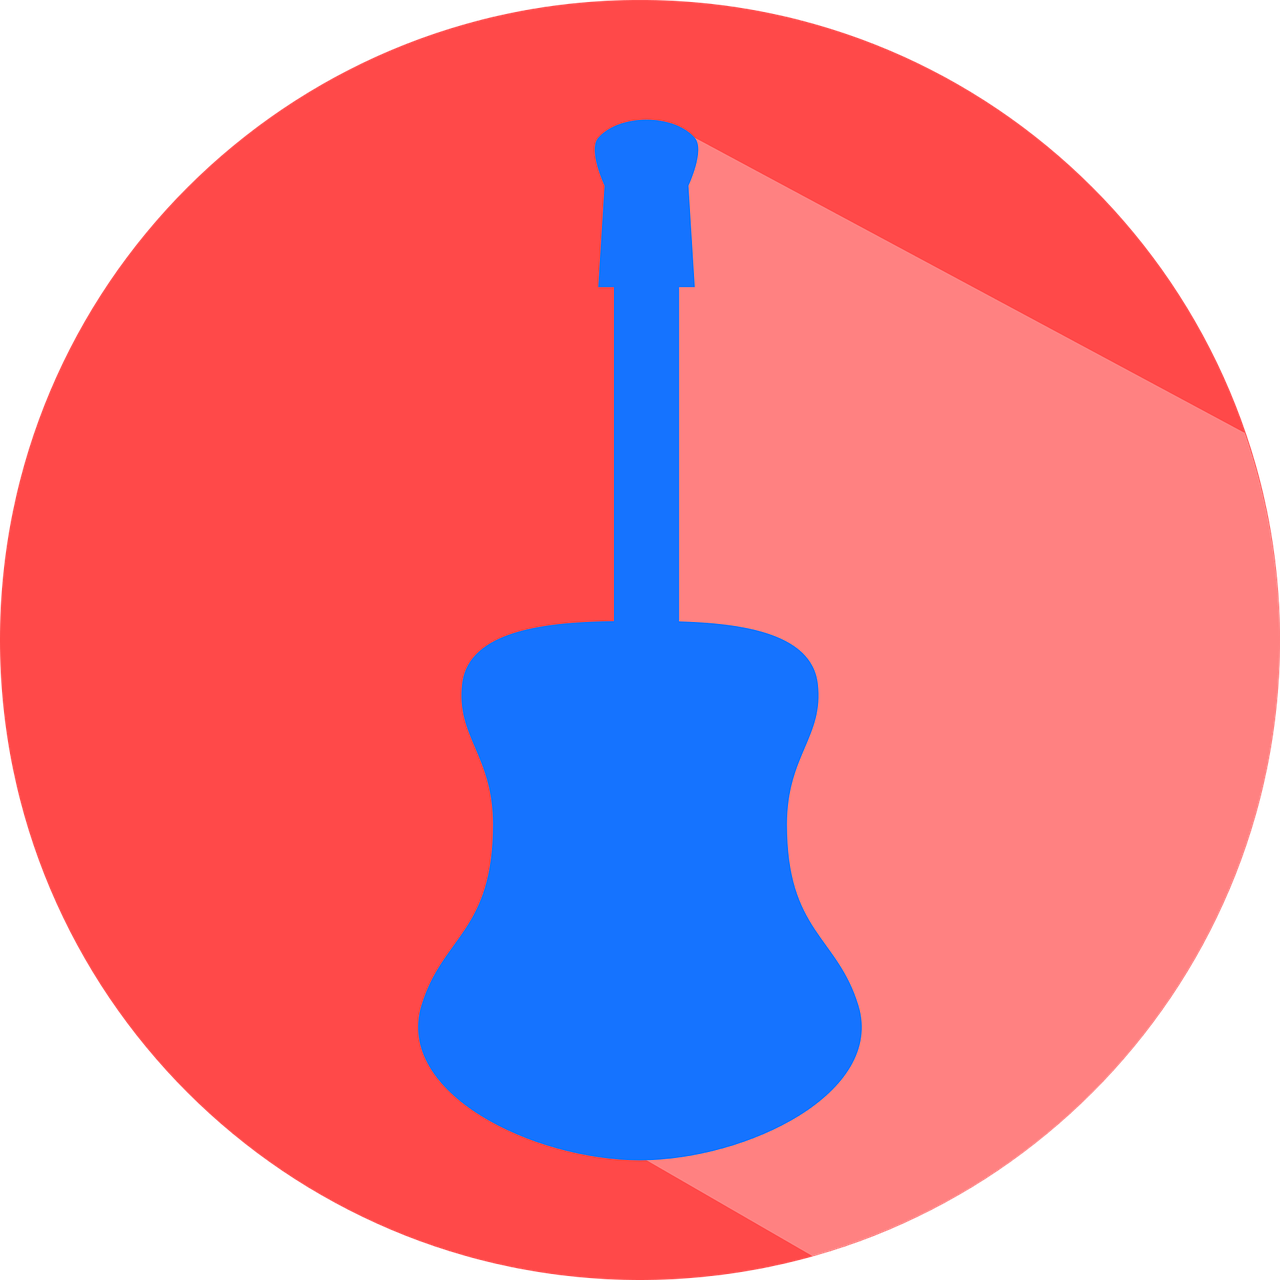 Guitar Música Guitar Icon - Ville De Saint Etienne (1280x1280)